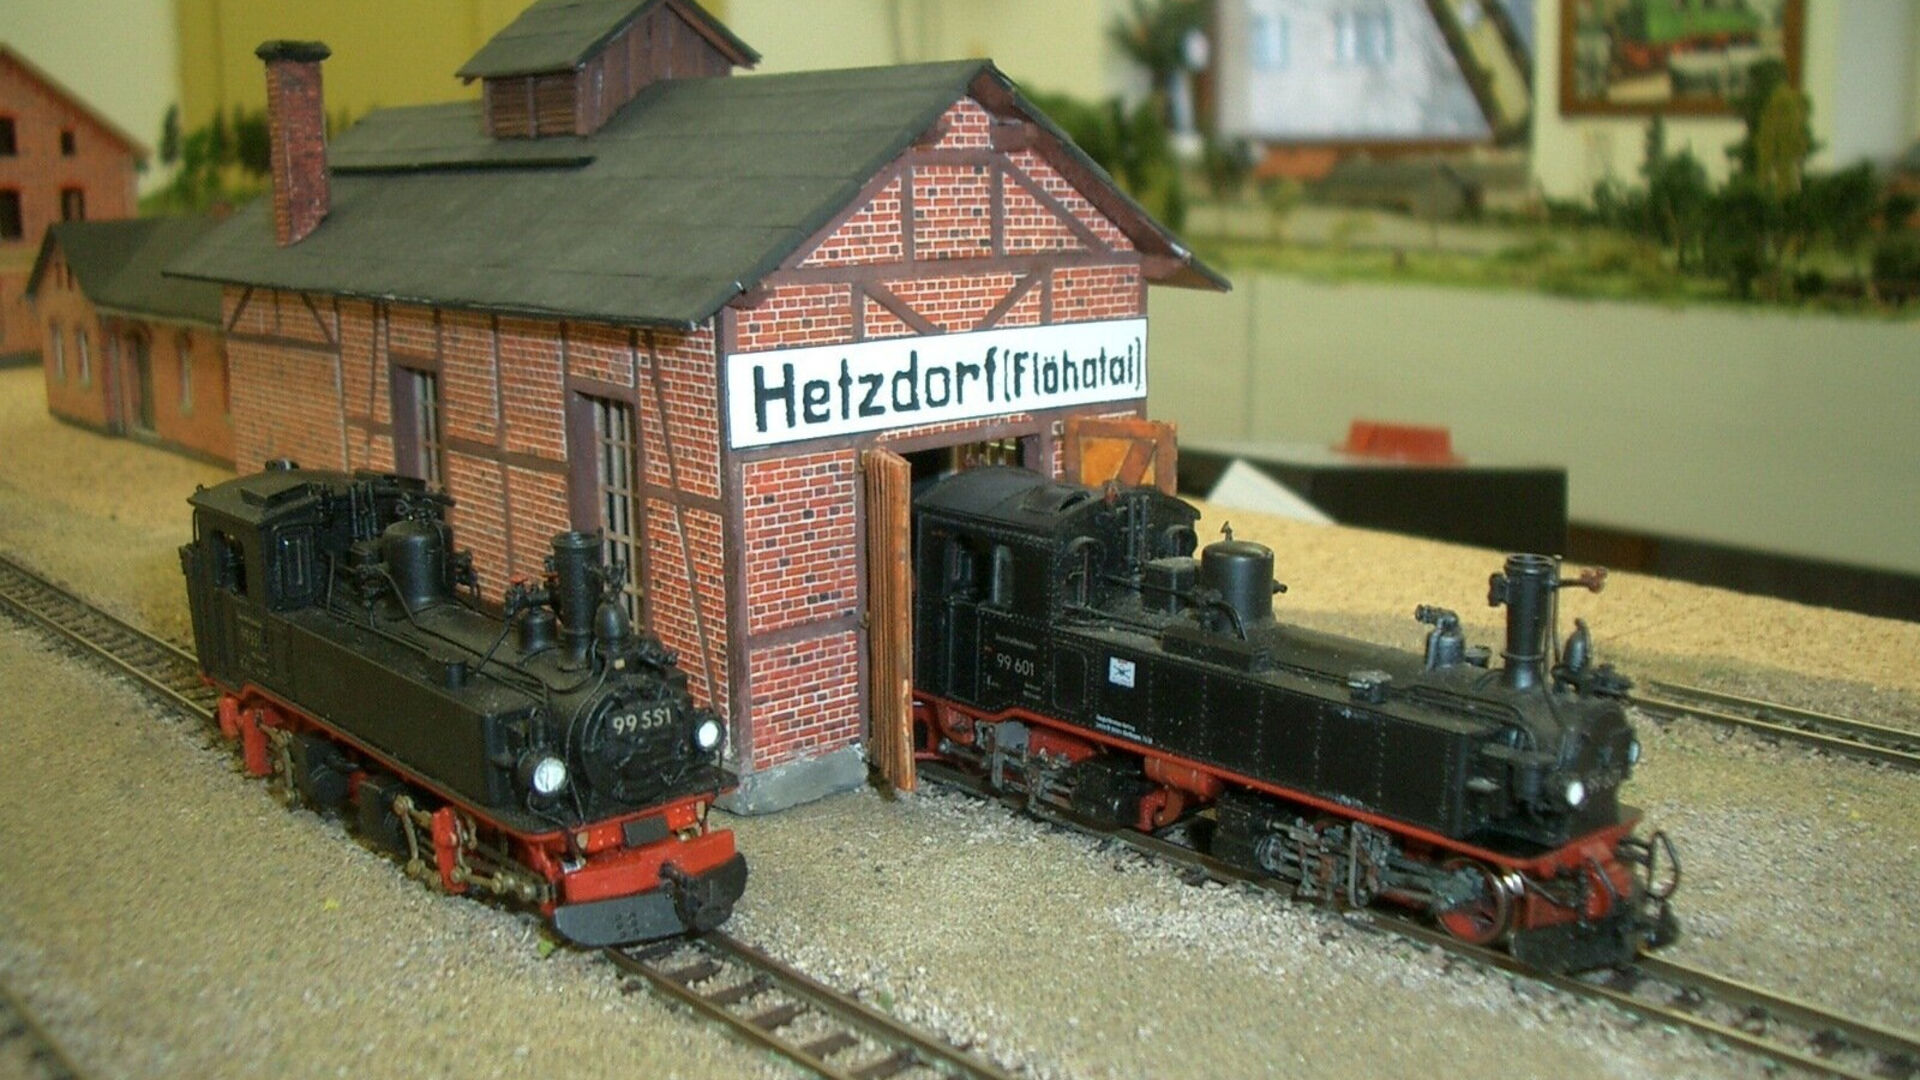 Die Schmalspurbahn im Modell 
© Bernd Rüger